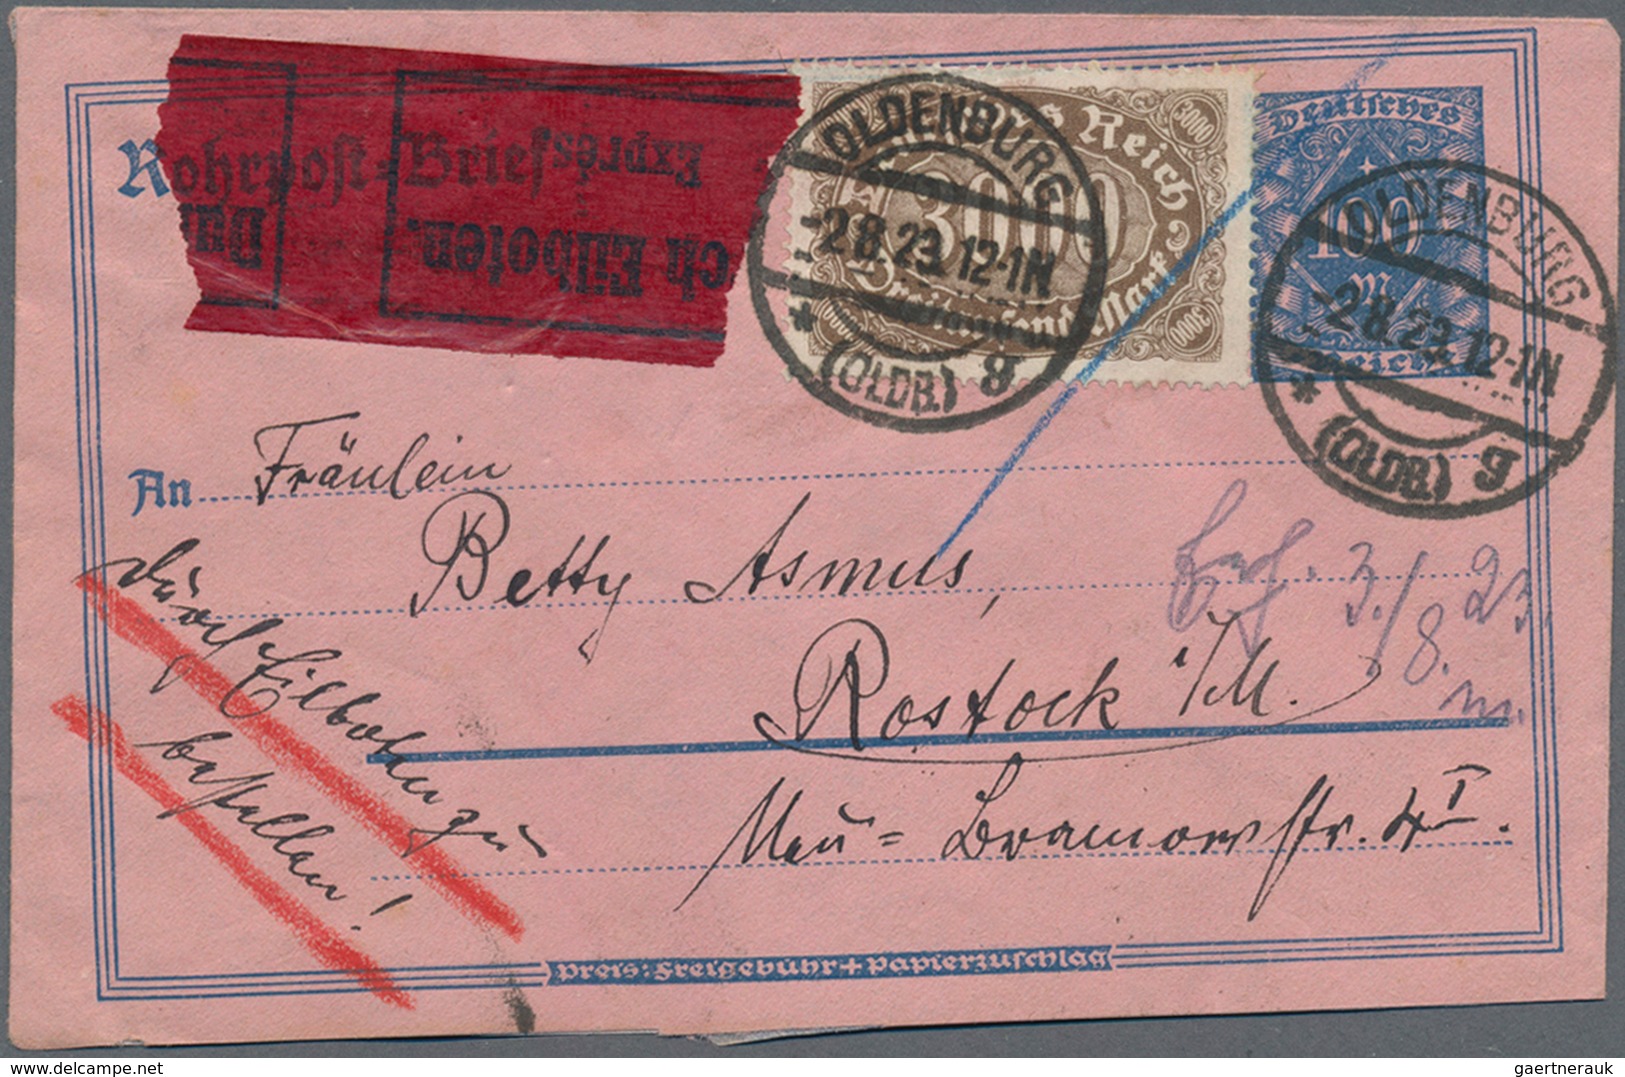 Deutsches Reich - Inflation: 1919/1923, vielseitige Partie von ca. 400 Briefen, Karten und gebraucht